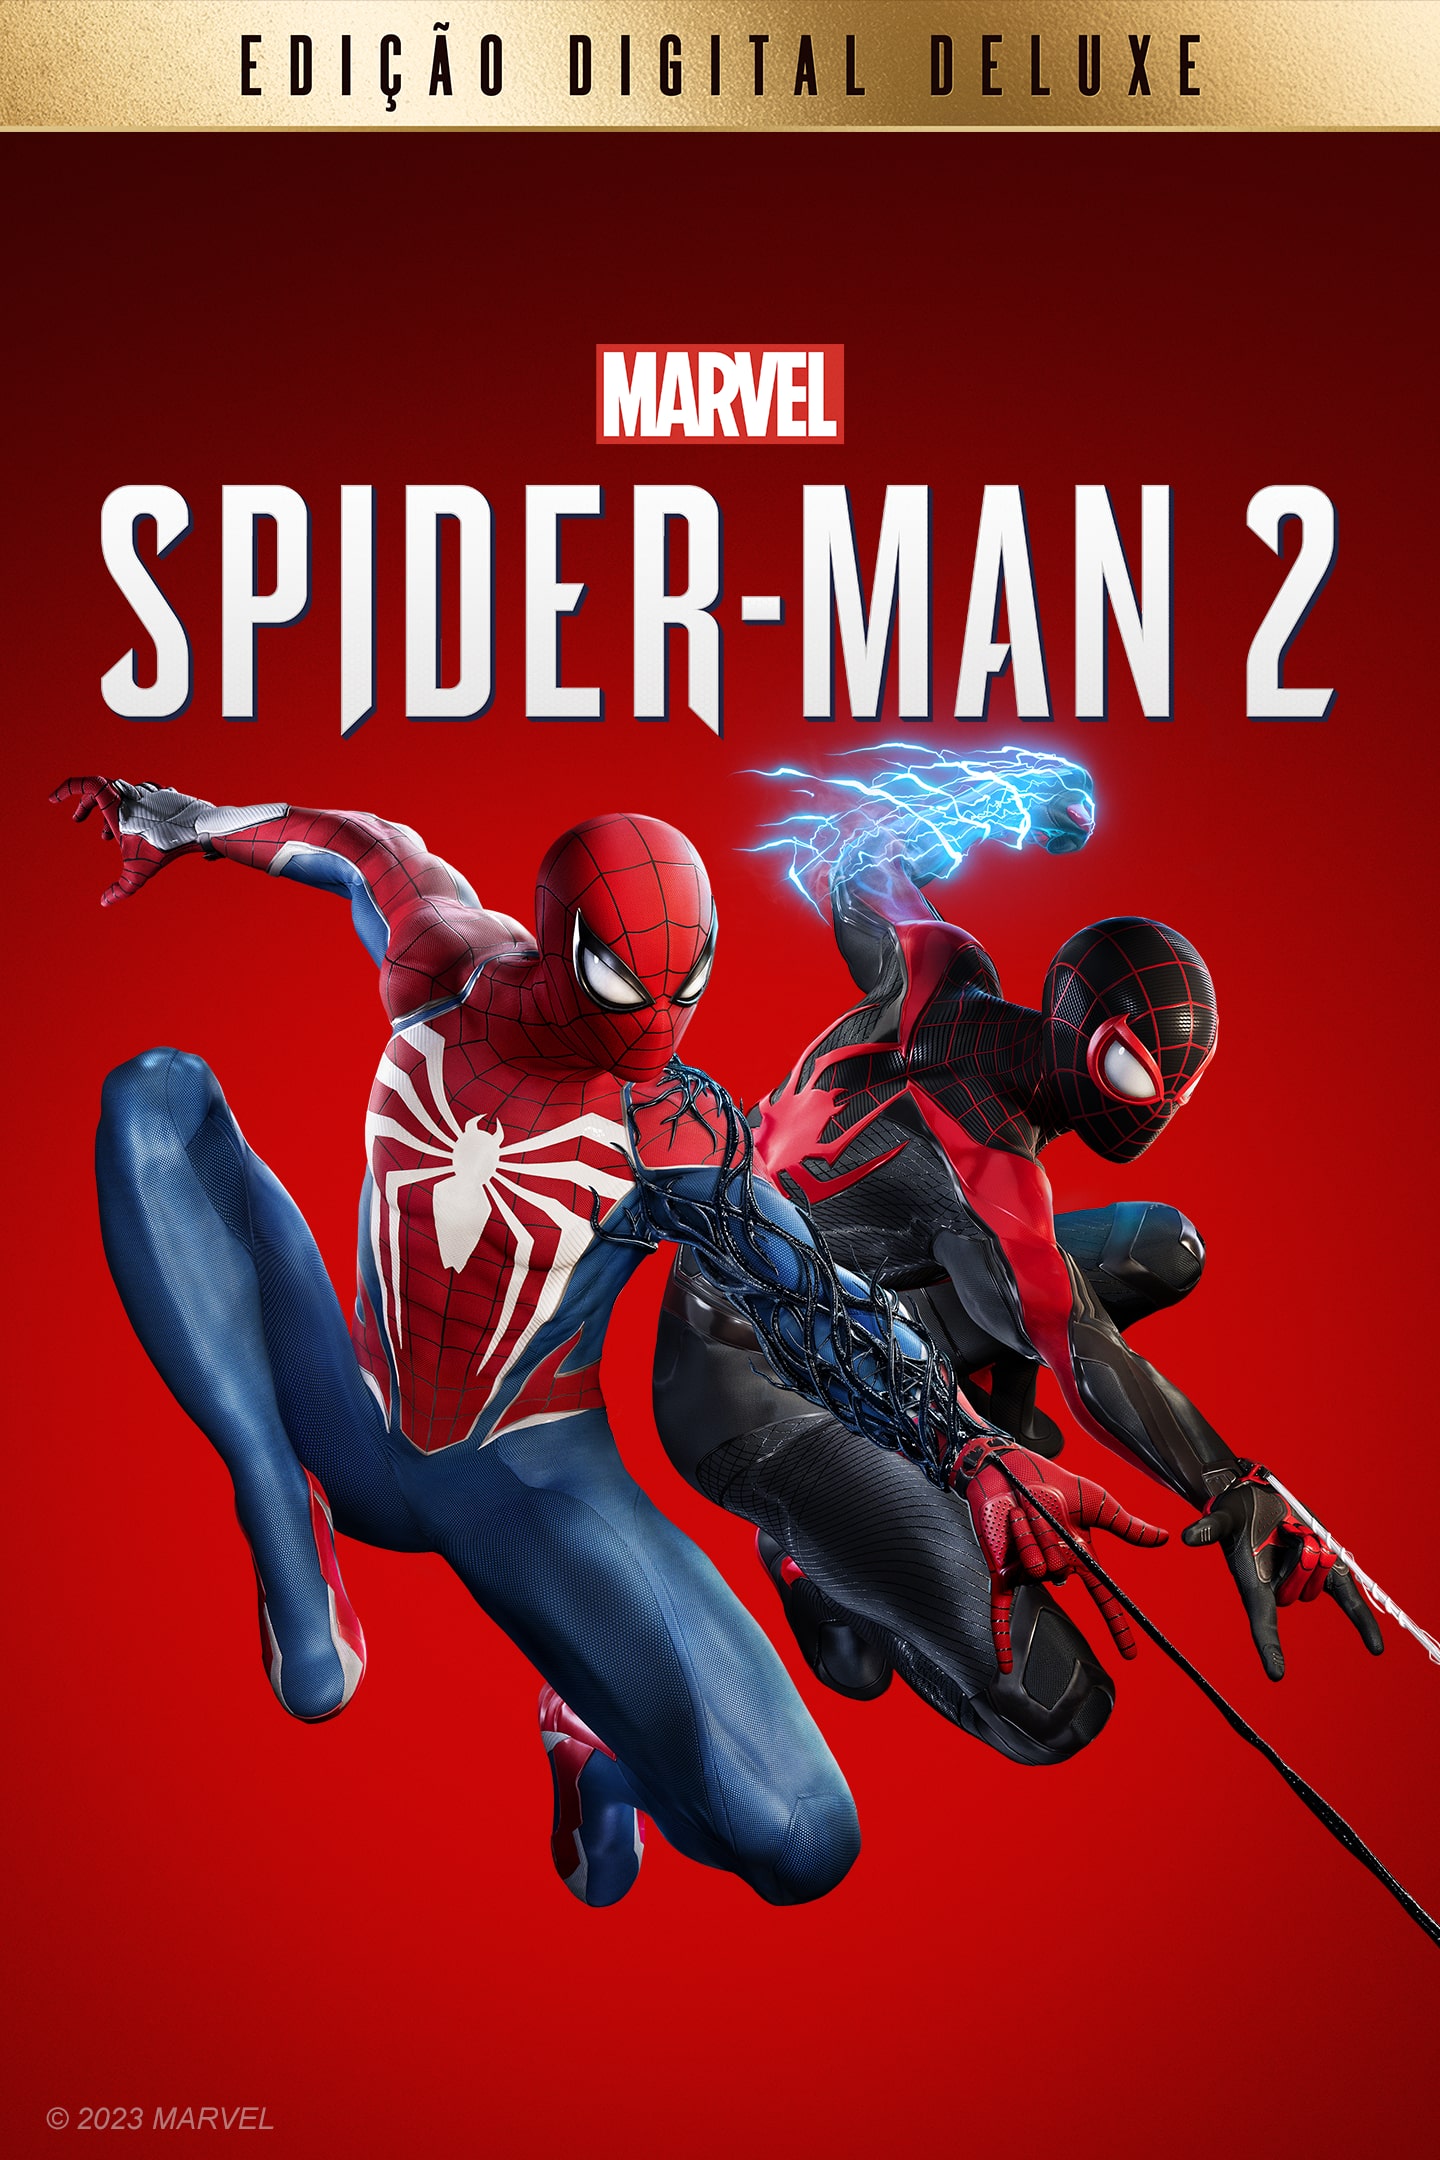 SPIDER MAN 2 jogo online gratuito em